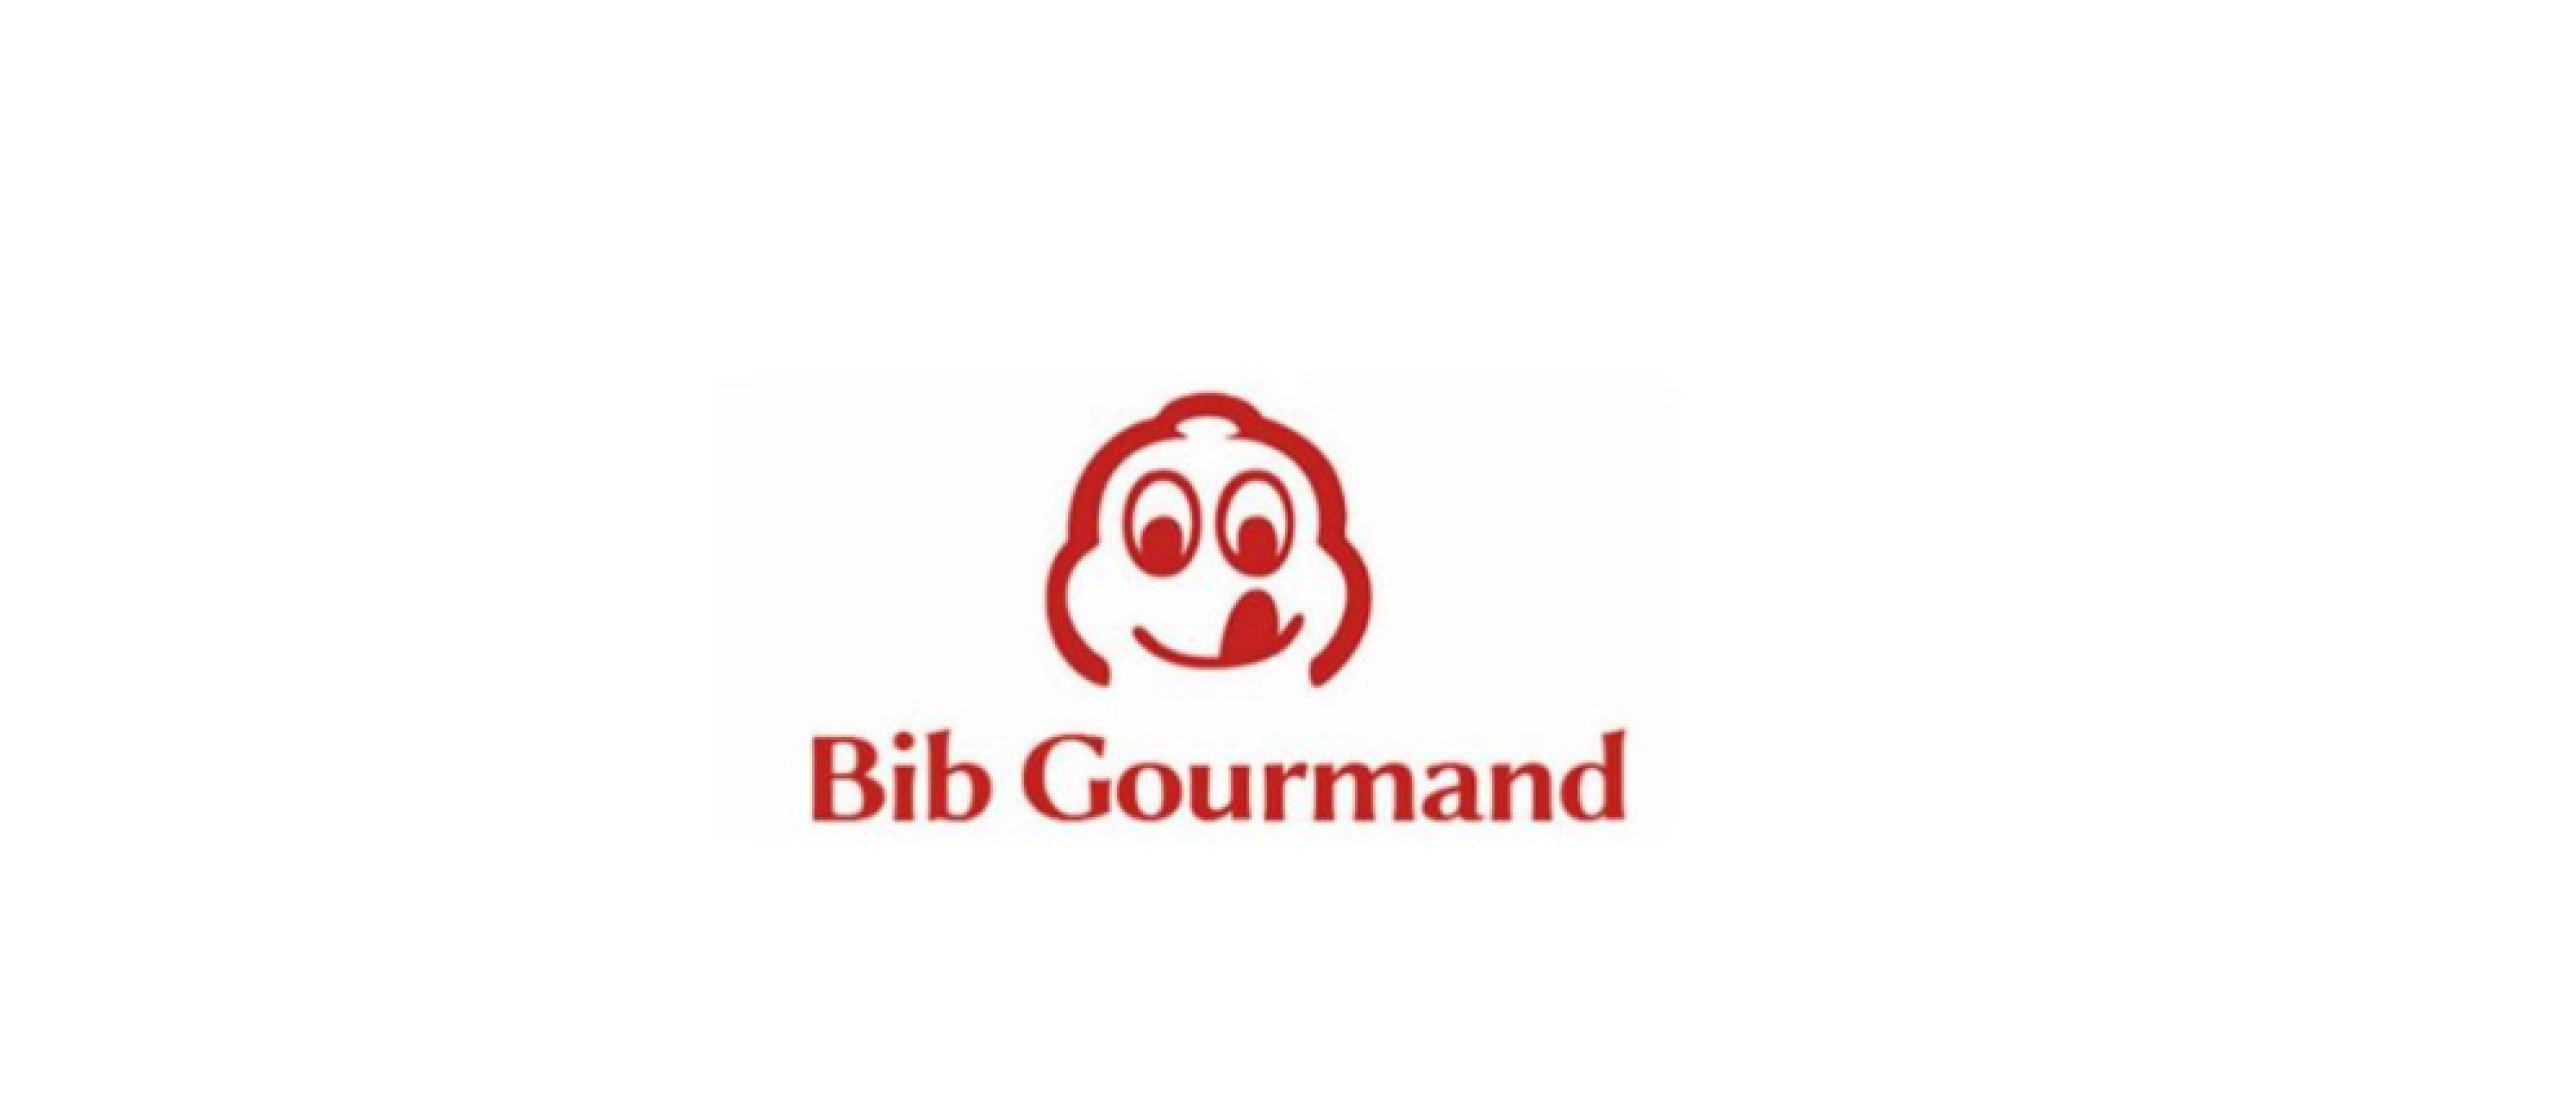 Acht nieuwe restaurants met een Bib Gourmand bekendgemaakt voor Michelingids 2023